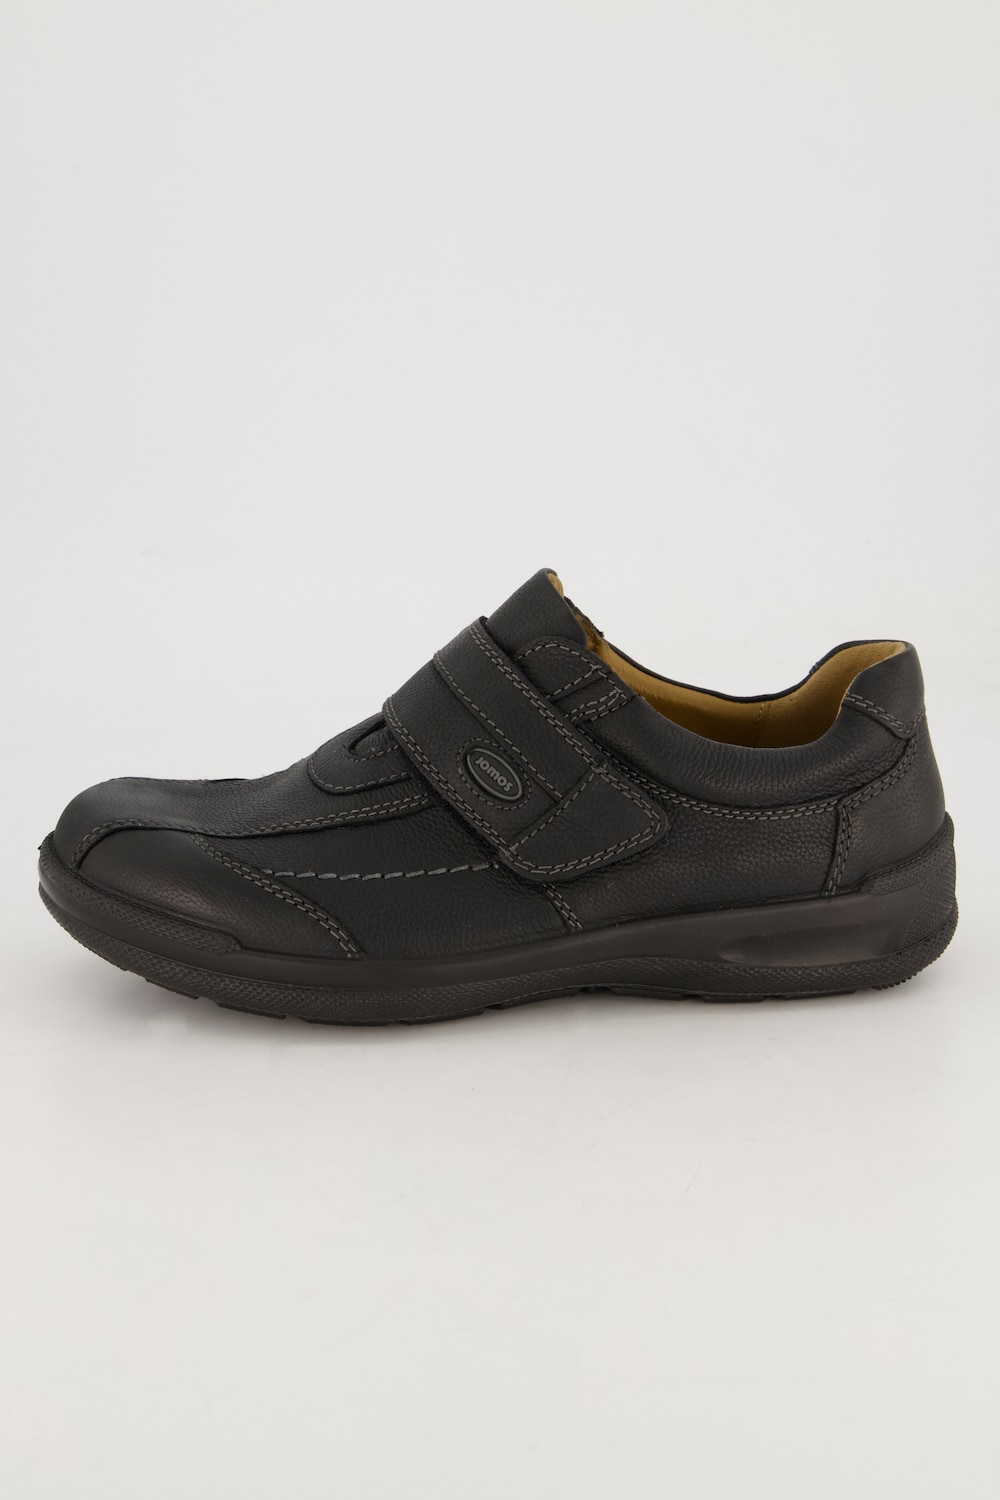 Grote Maten Loafers, Heren, zwart, Maat: 42, Leer, JP1880